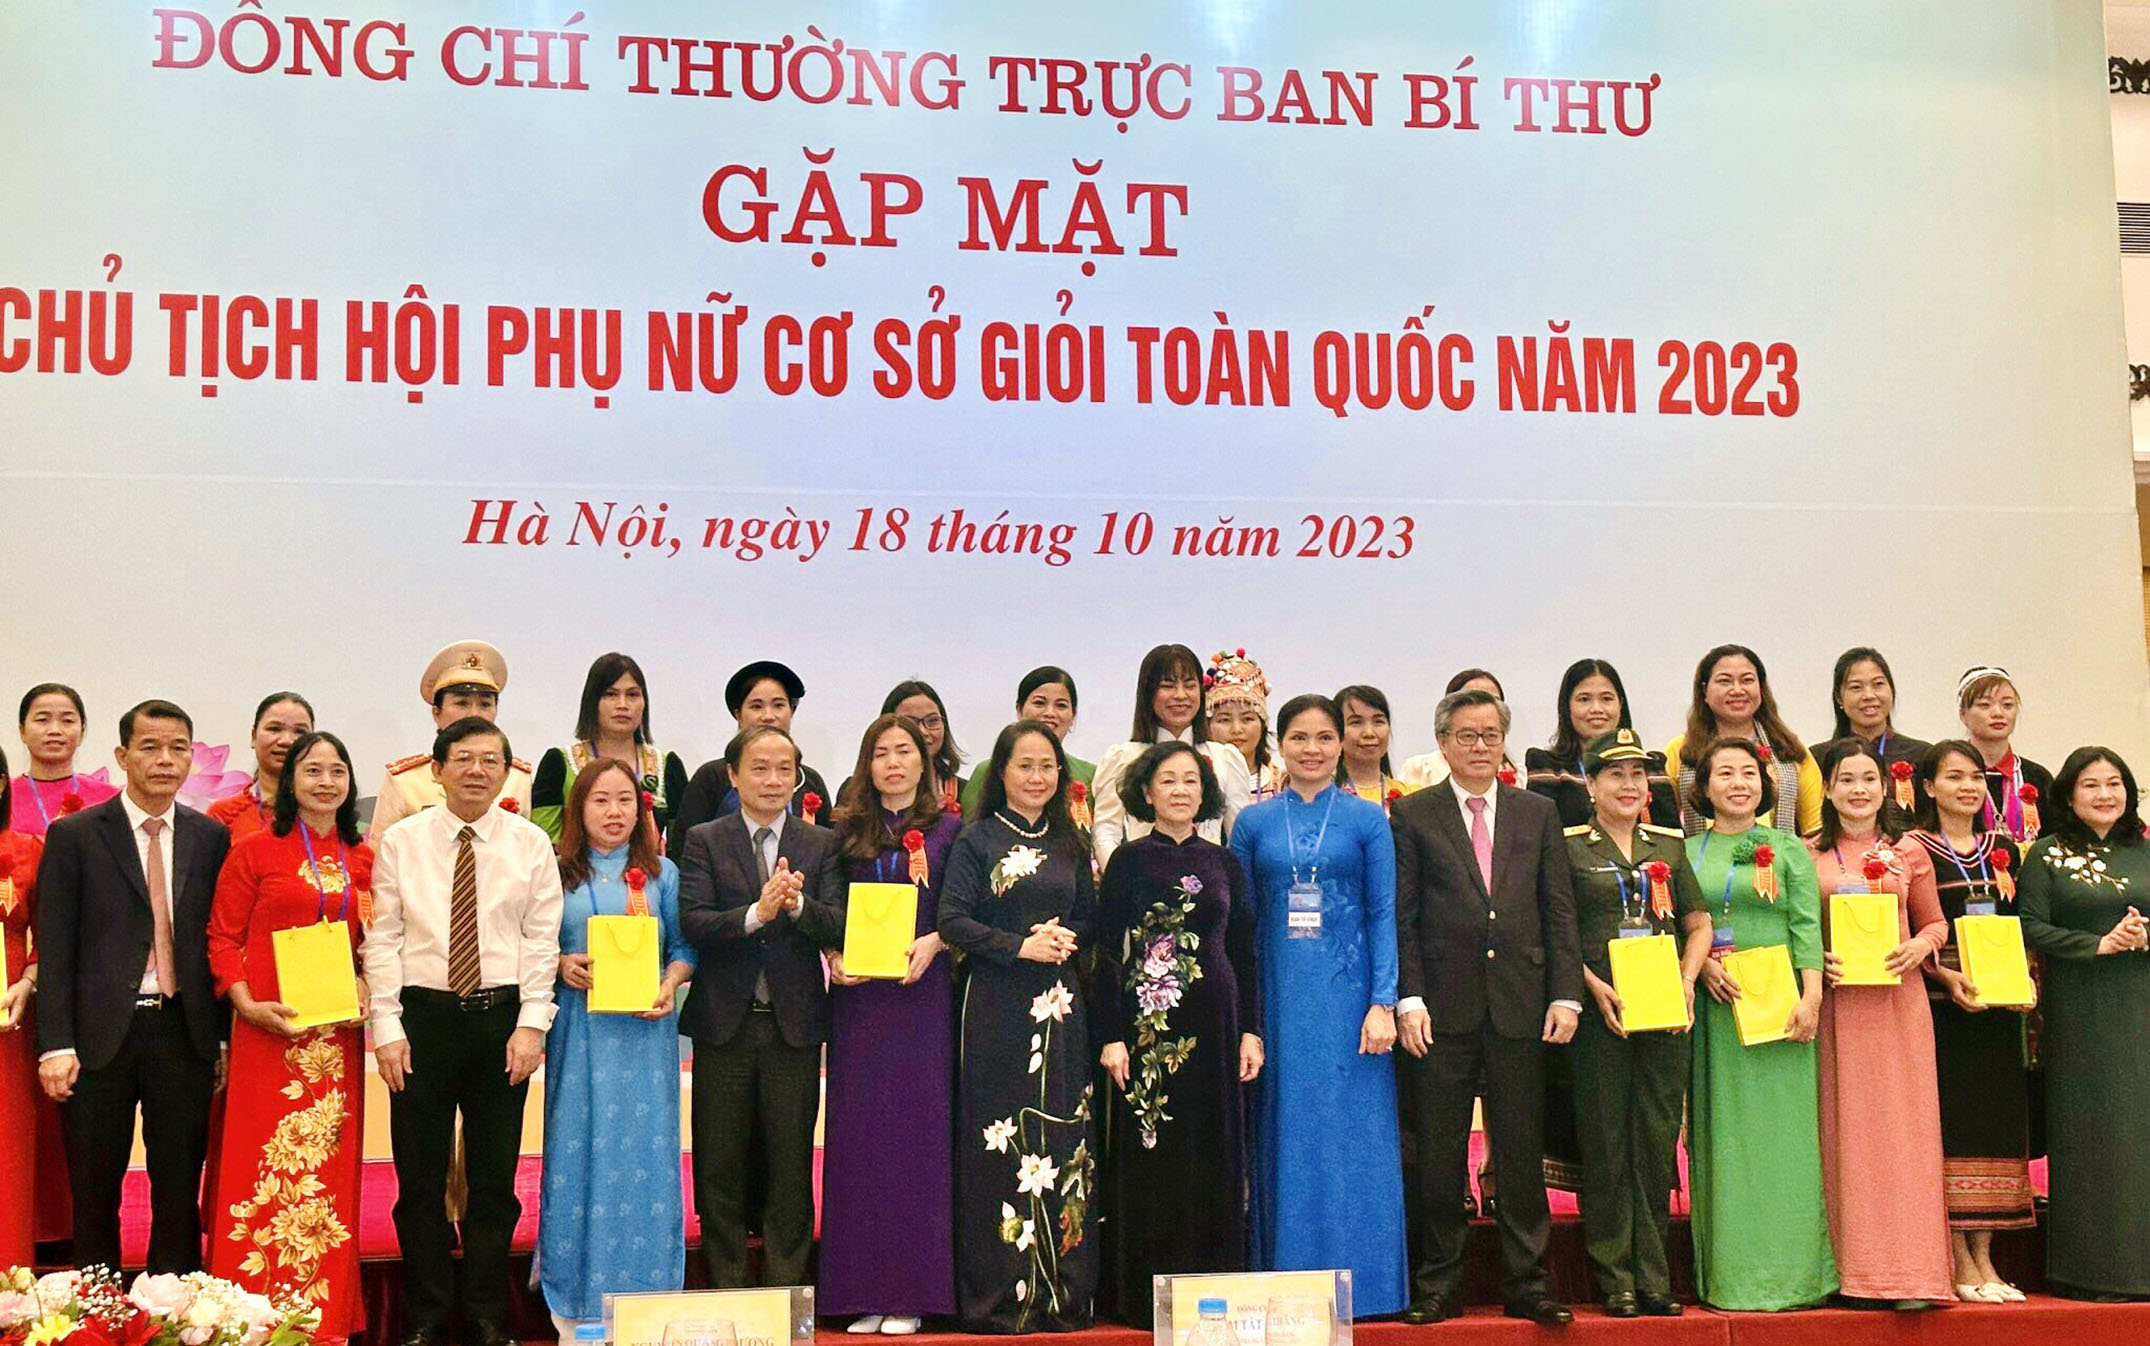 Các đại biểu phụ nữ tỉnh Quảng Bình chụp ảnh lưu niệm với đồng chí Thường trực Ban Bí thư Trương Thị Mai tại buổi gặp mặt